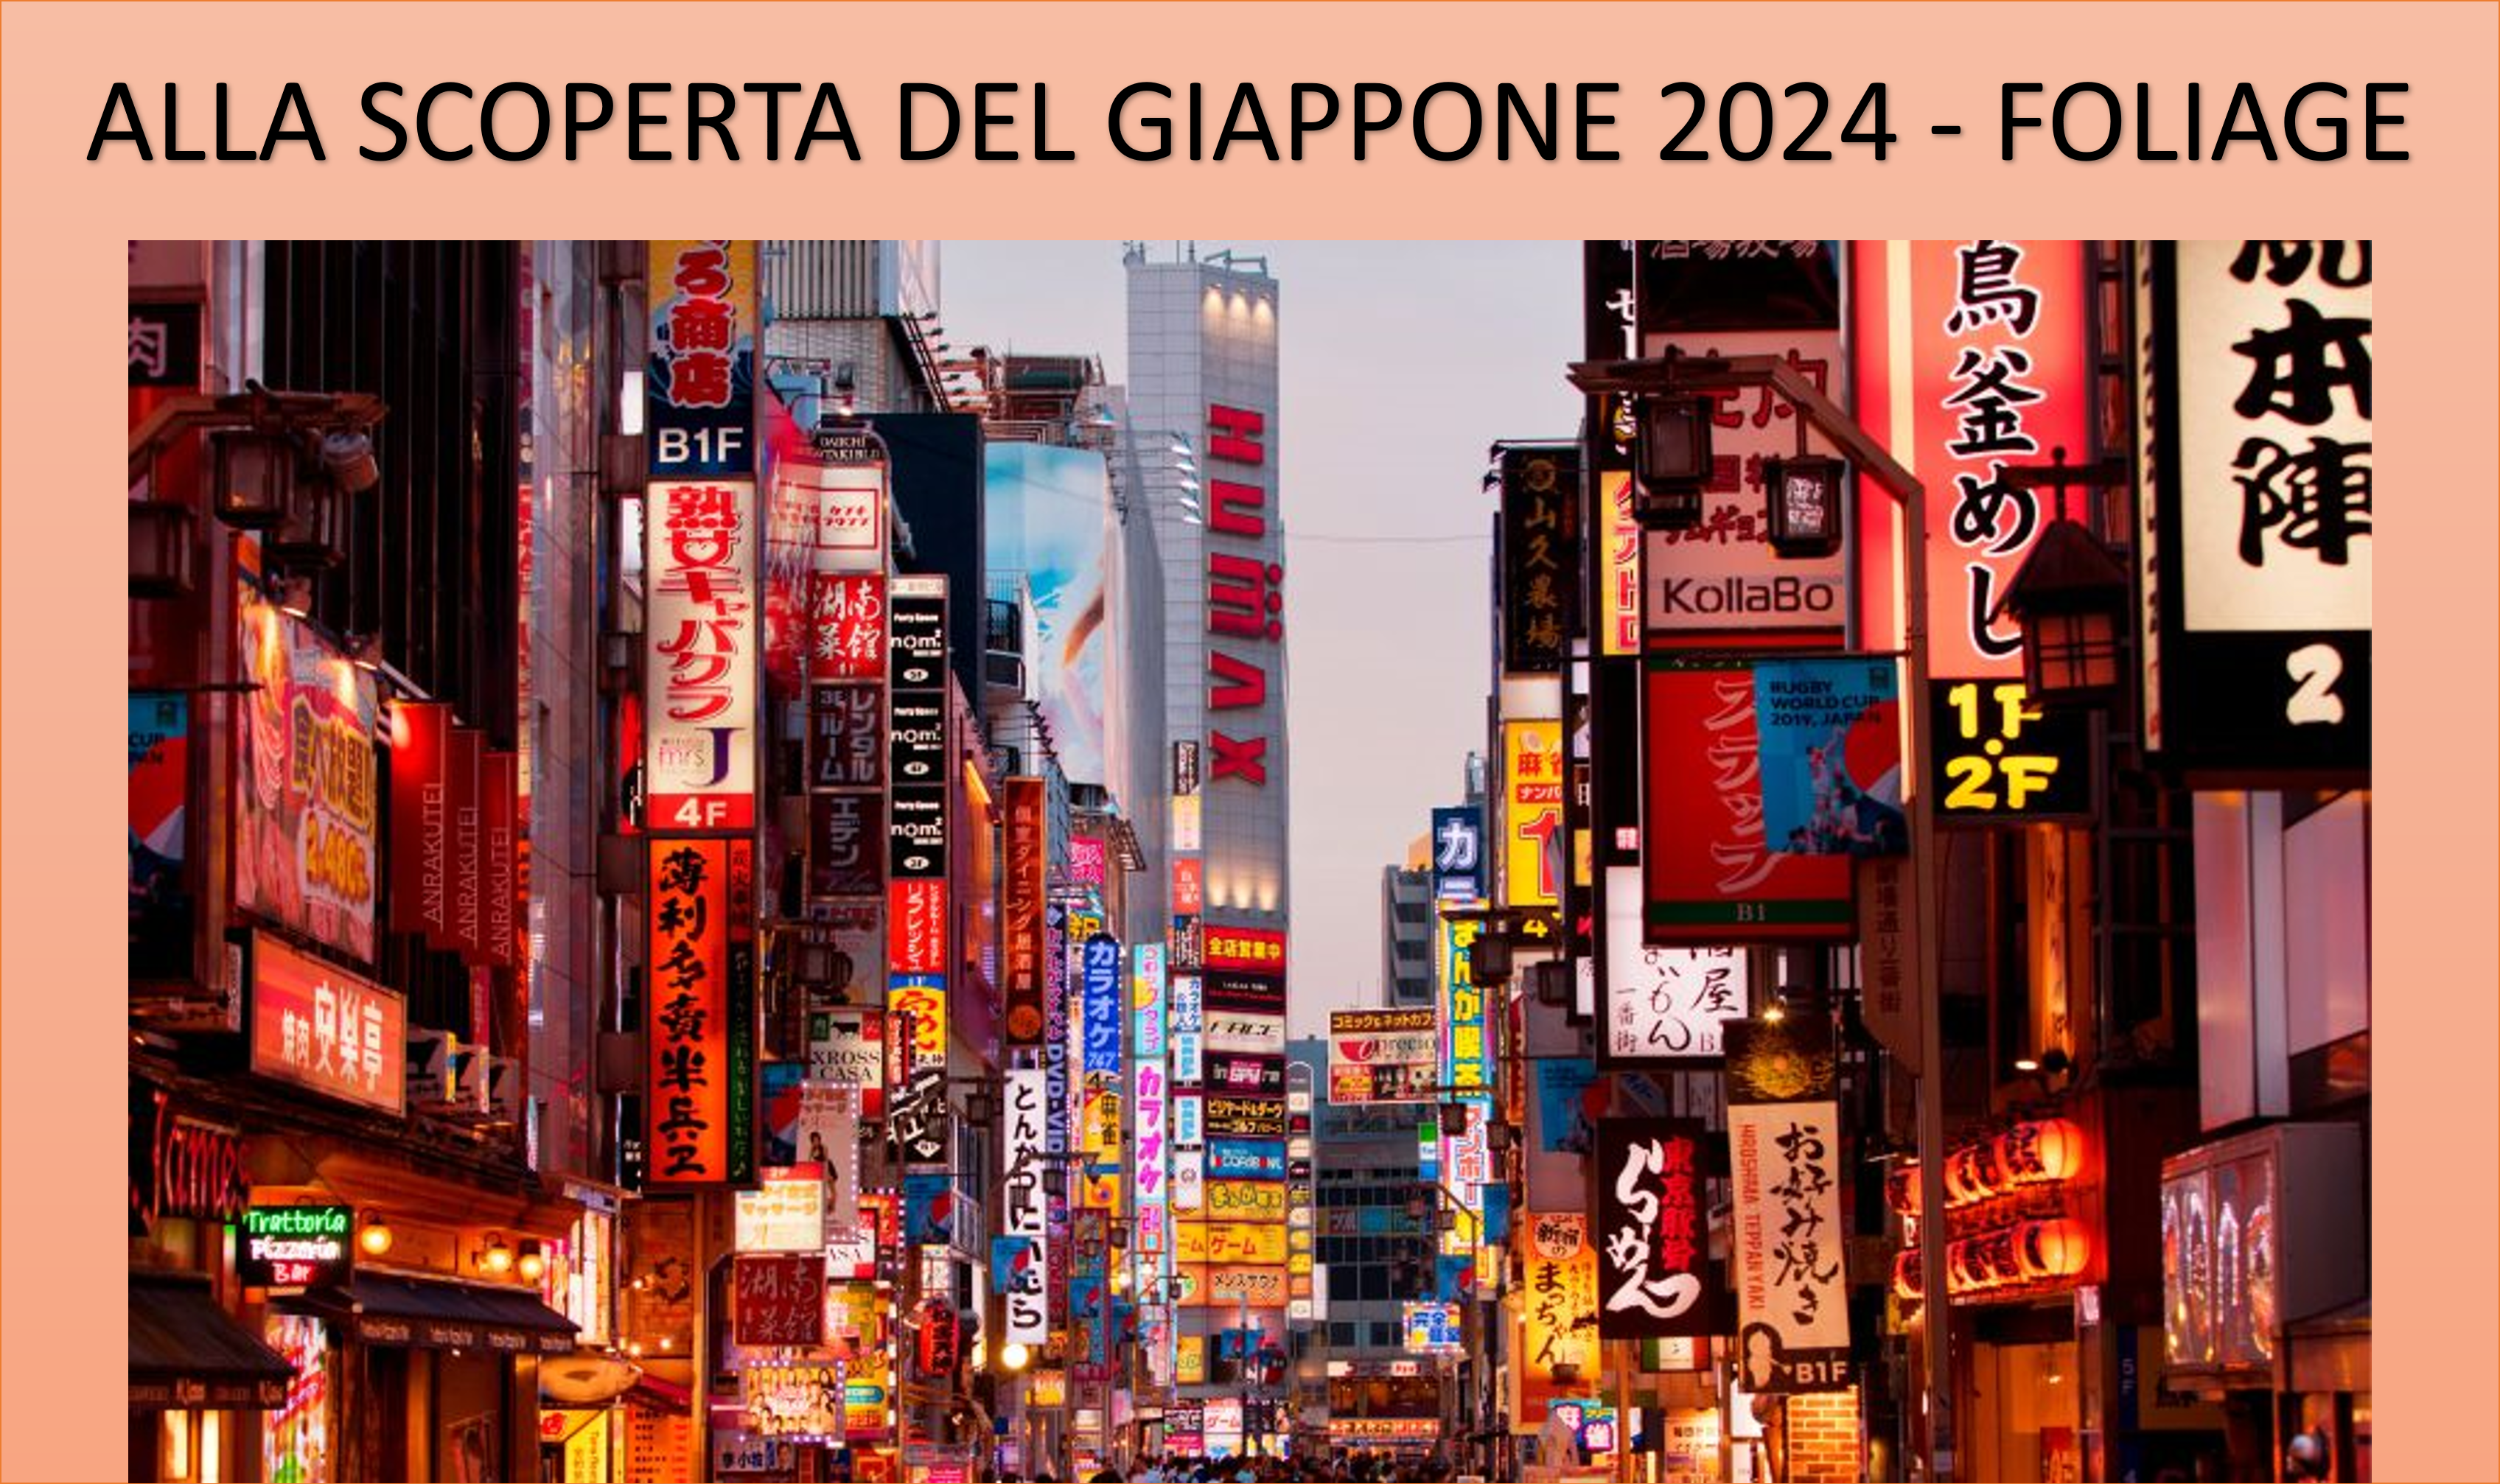 ALLA SCOPERTA DEL GIAPPONE 2024 - FOLIAGE